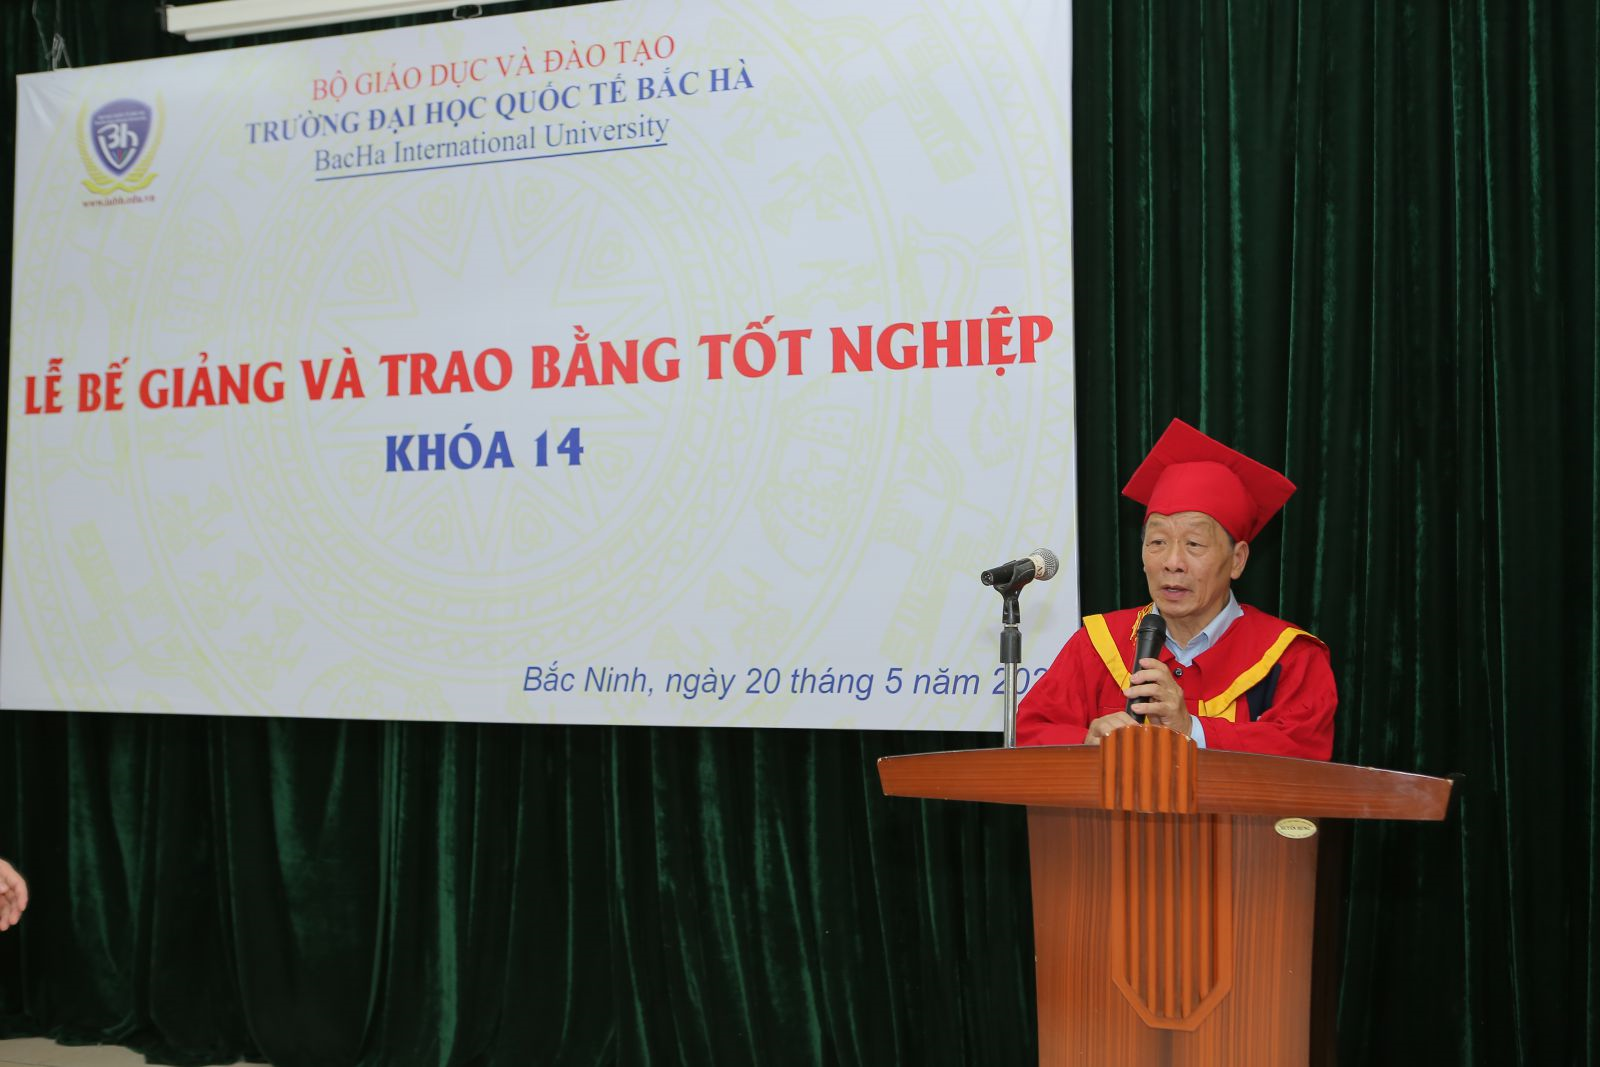 Phát biểu tại buổi lễ, PGS.TS Nguyễn Quốc Trung Hiệu trưởng Nhà trường chúc mừng những kết quả học tập và sự nỗ lực rèn luyện của các em sinh viên.